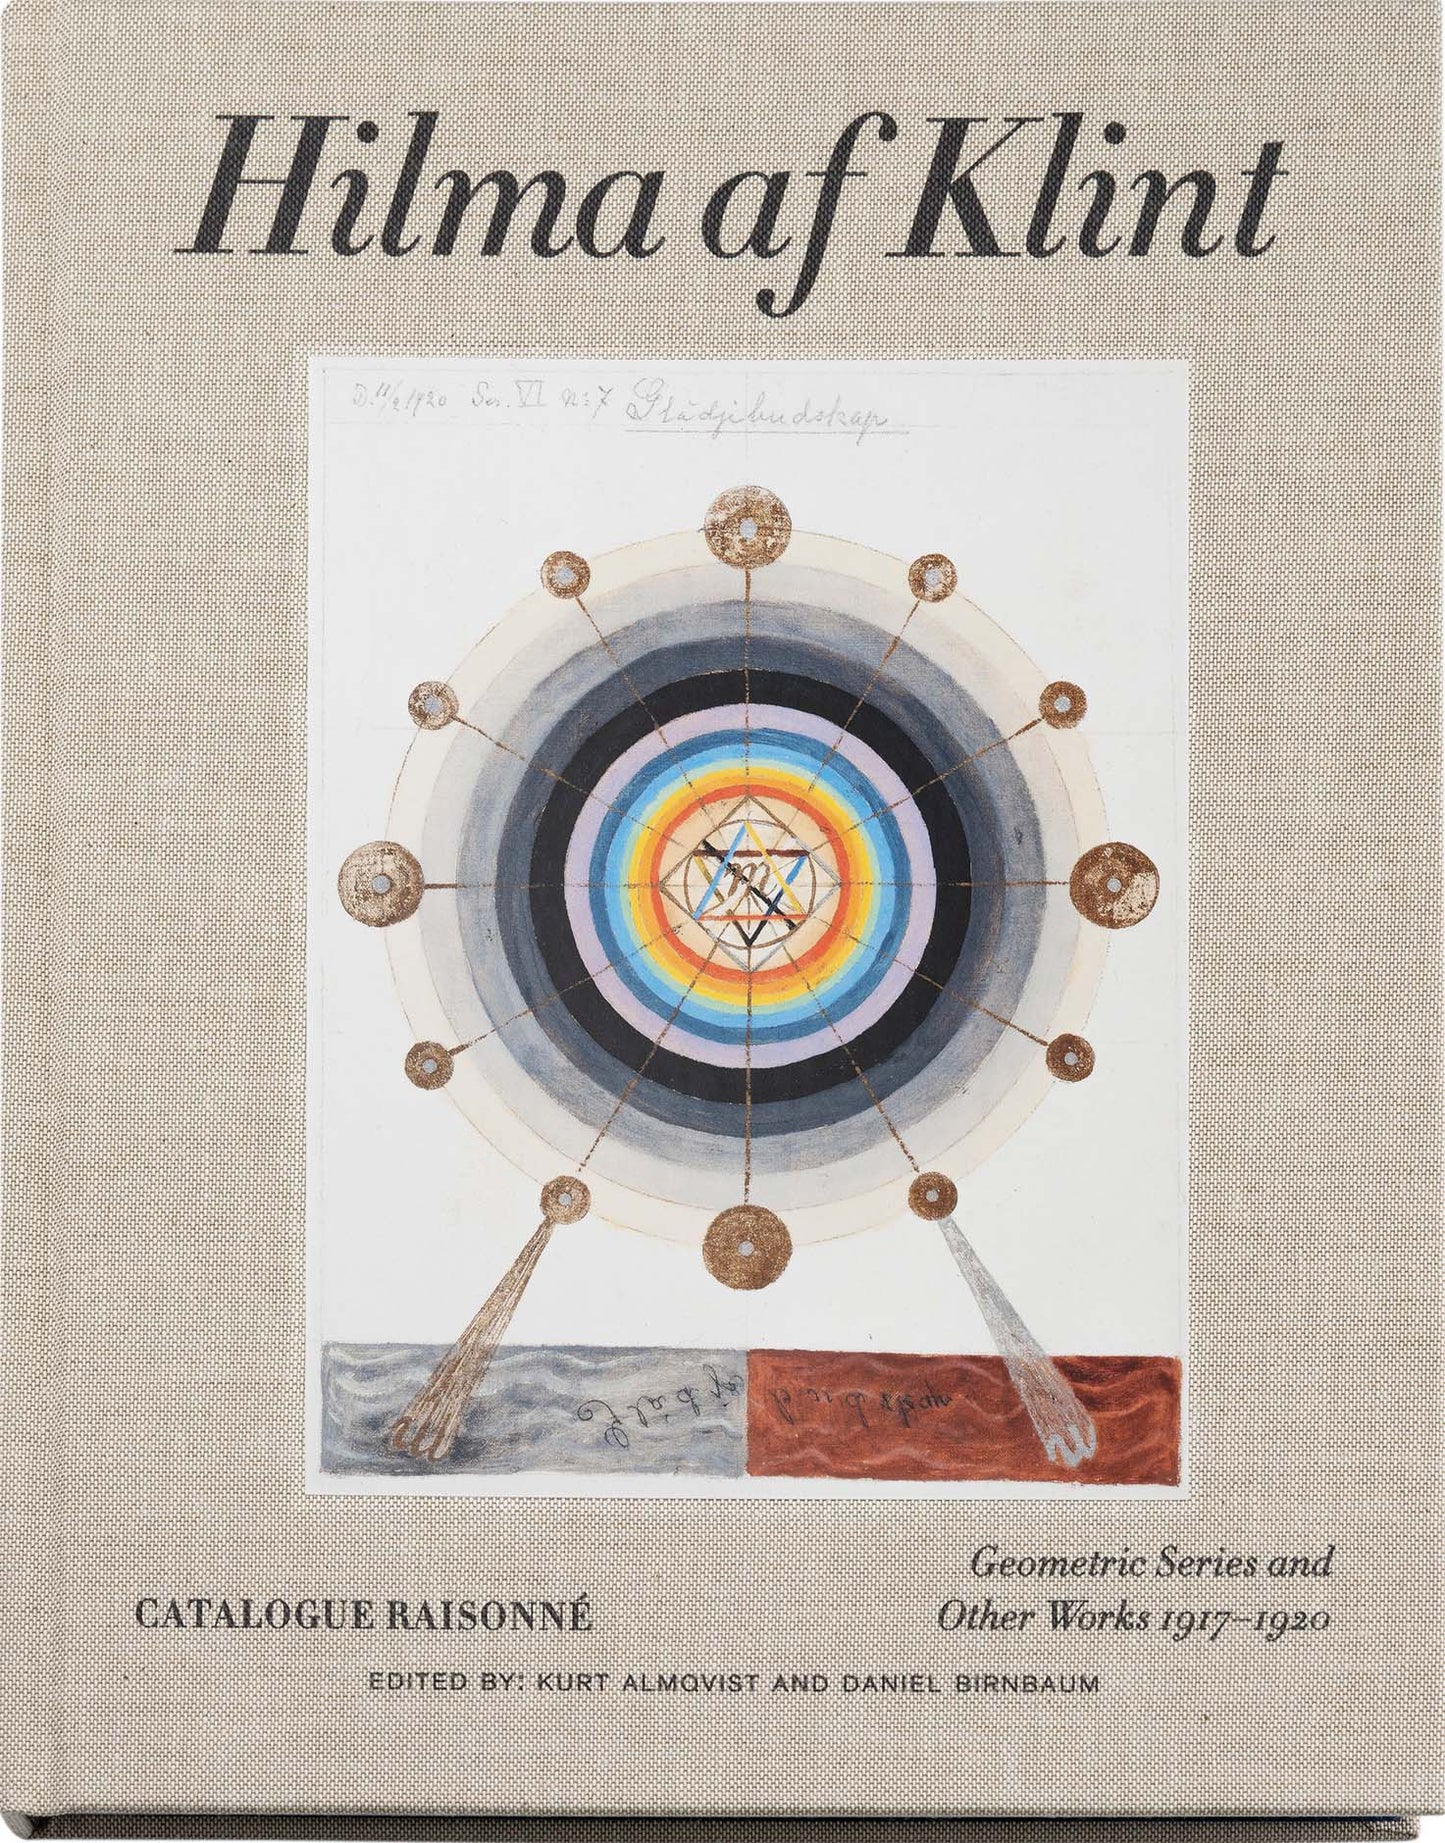 Hilma Af Klint: The Complete Catalogue Raisonné: Volumes I-VII